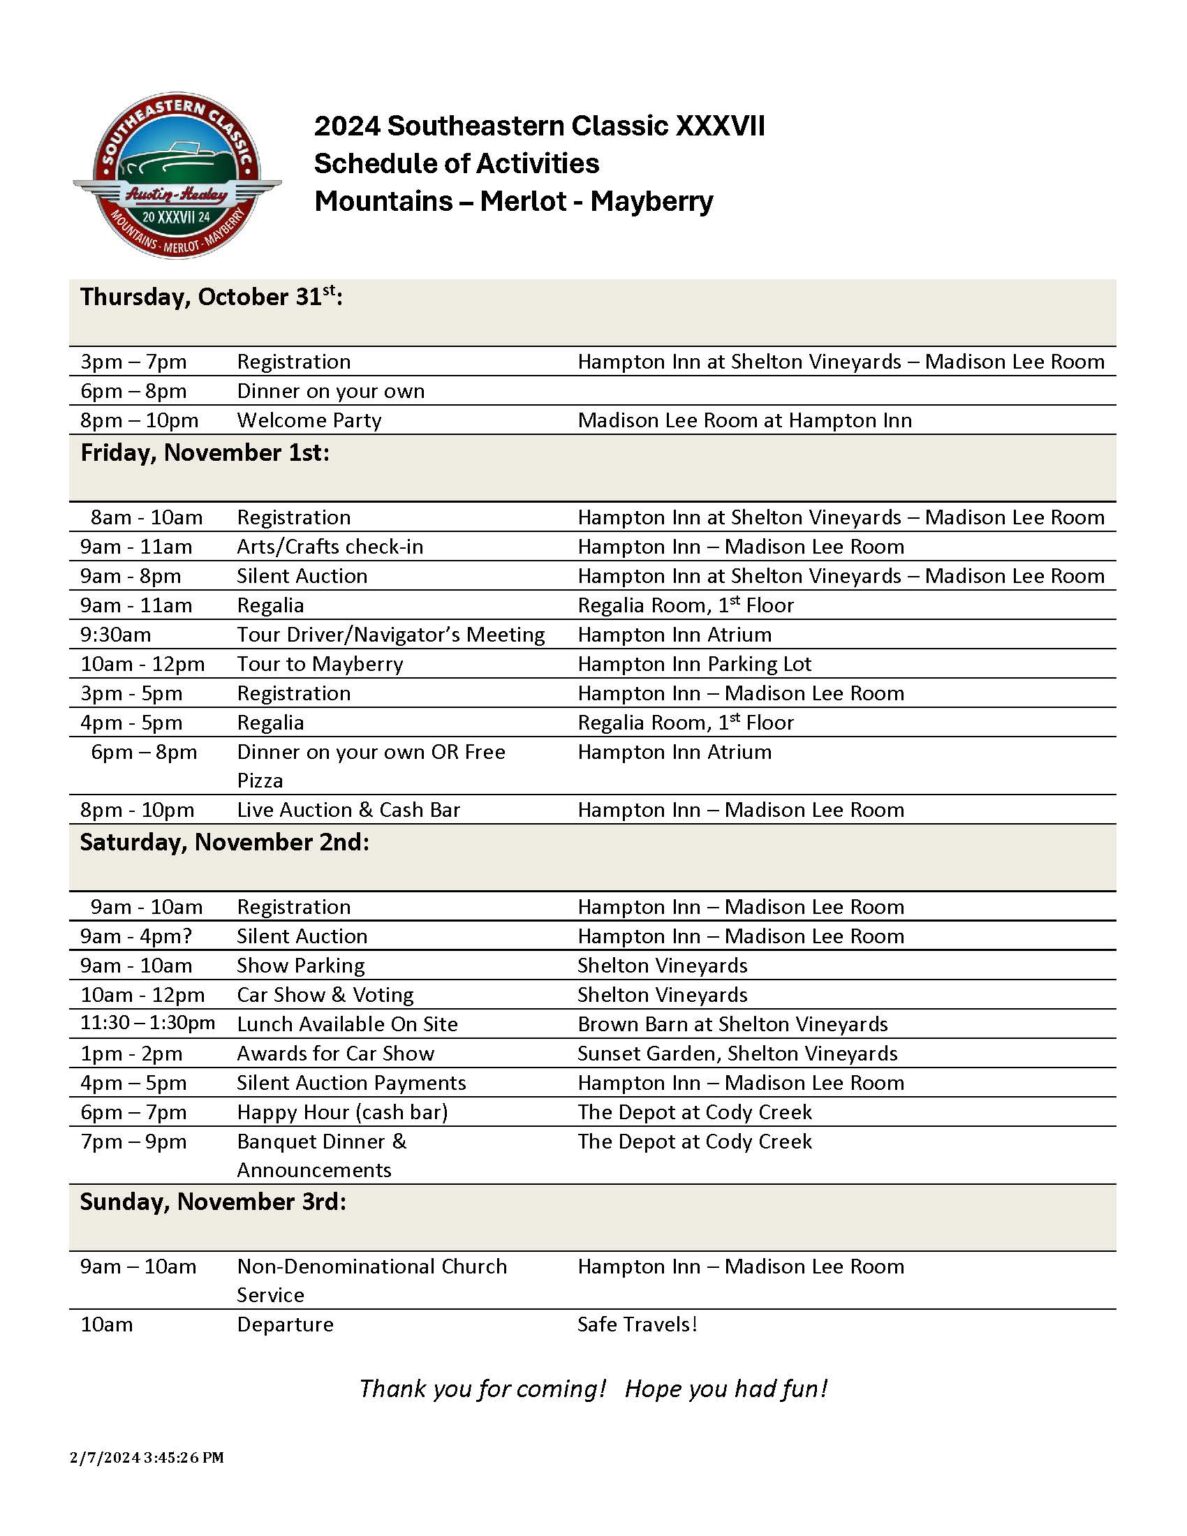 SEC 37 - Schedule of Events